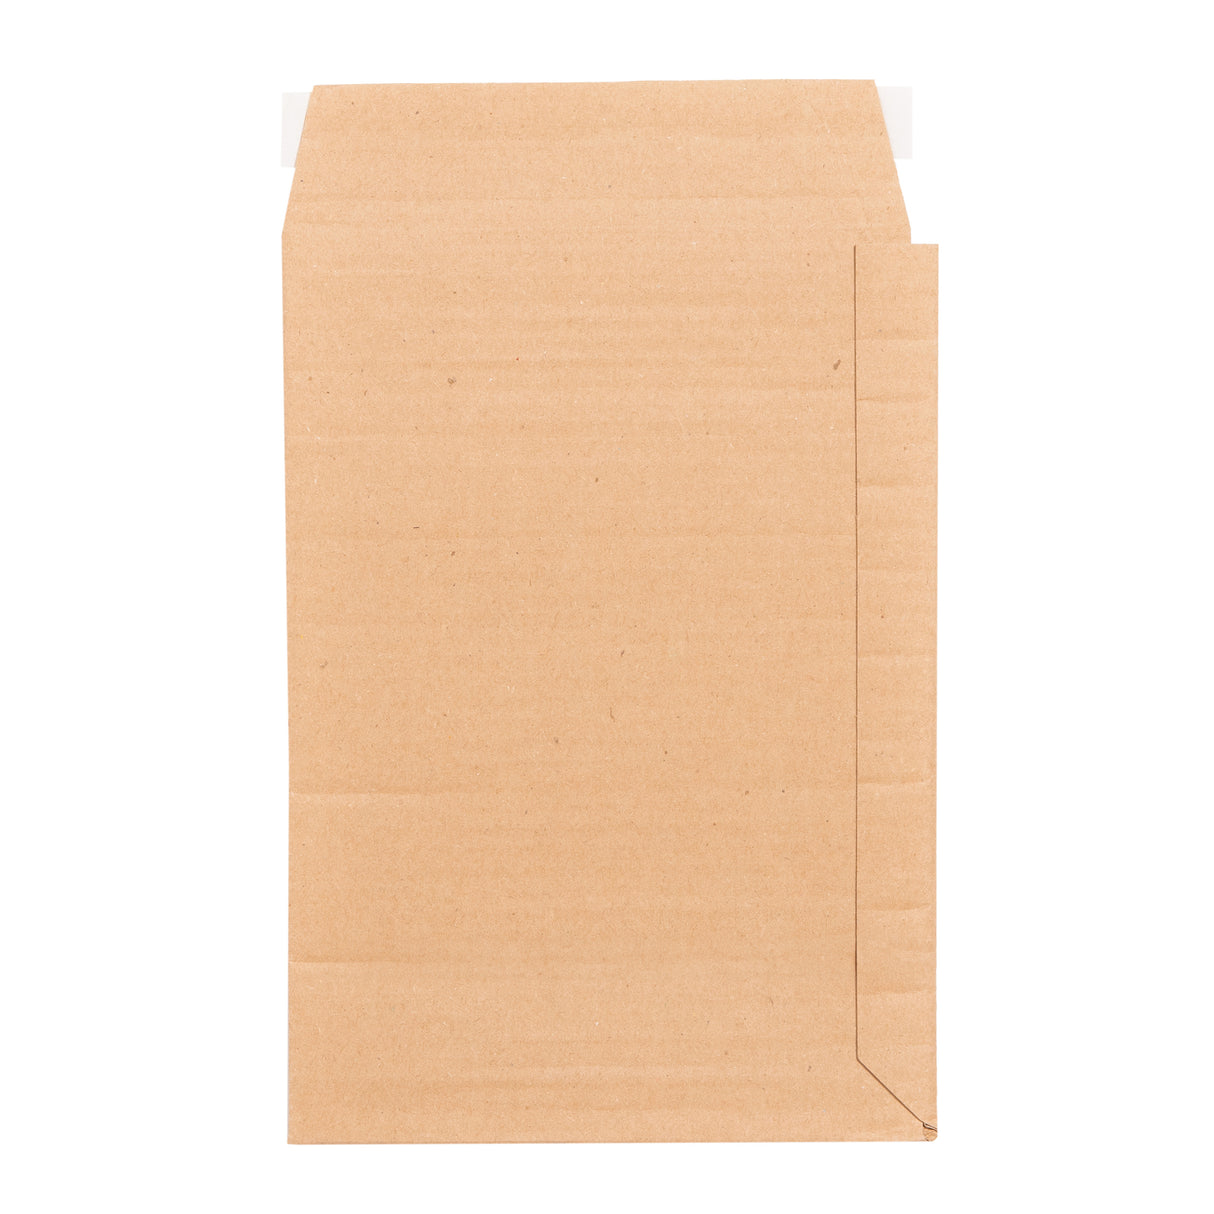 M-C0/3 Cardboard Envelopes